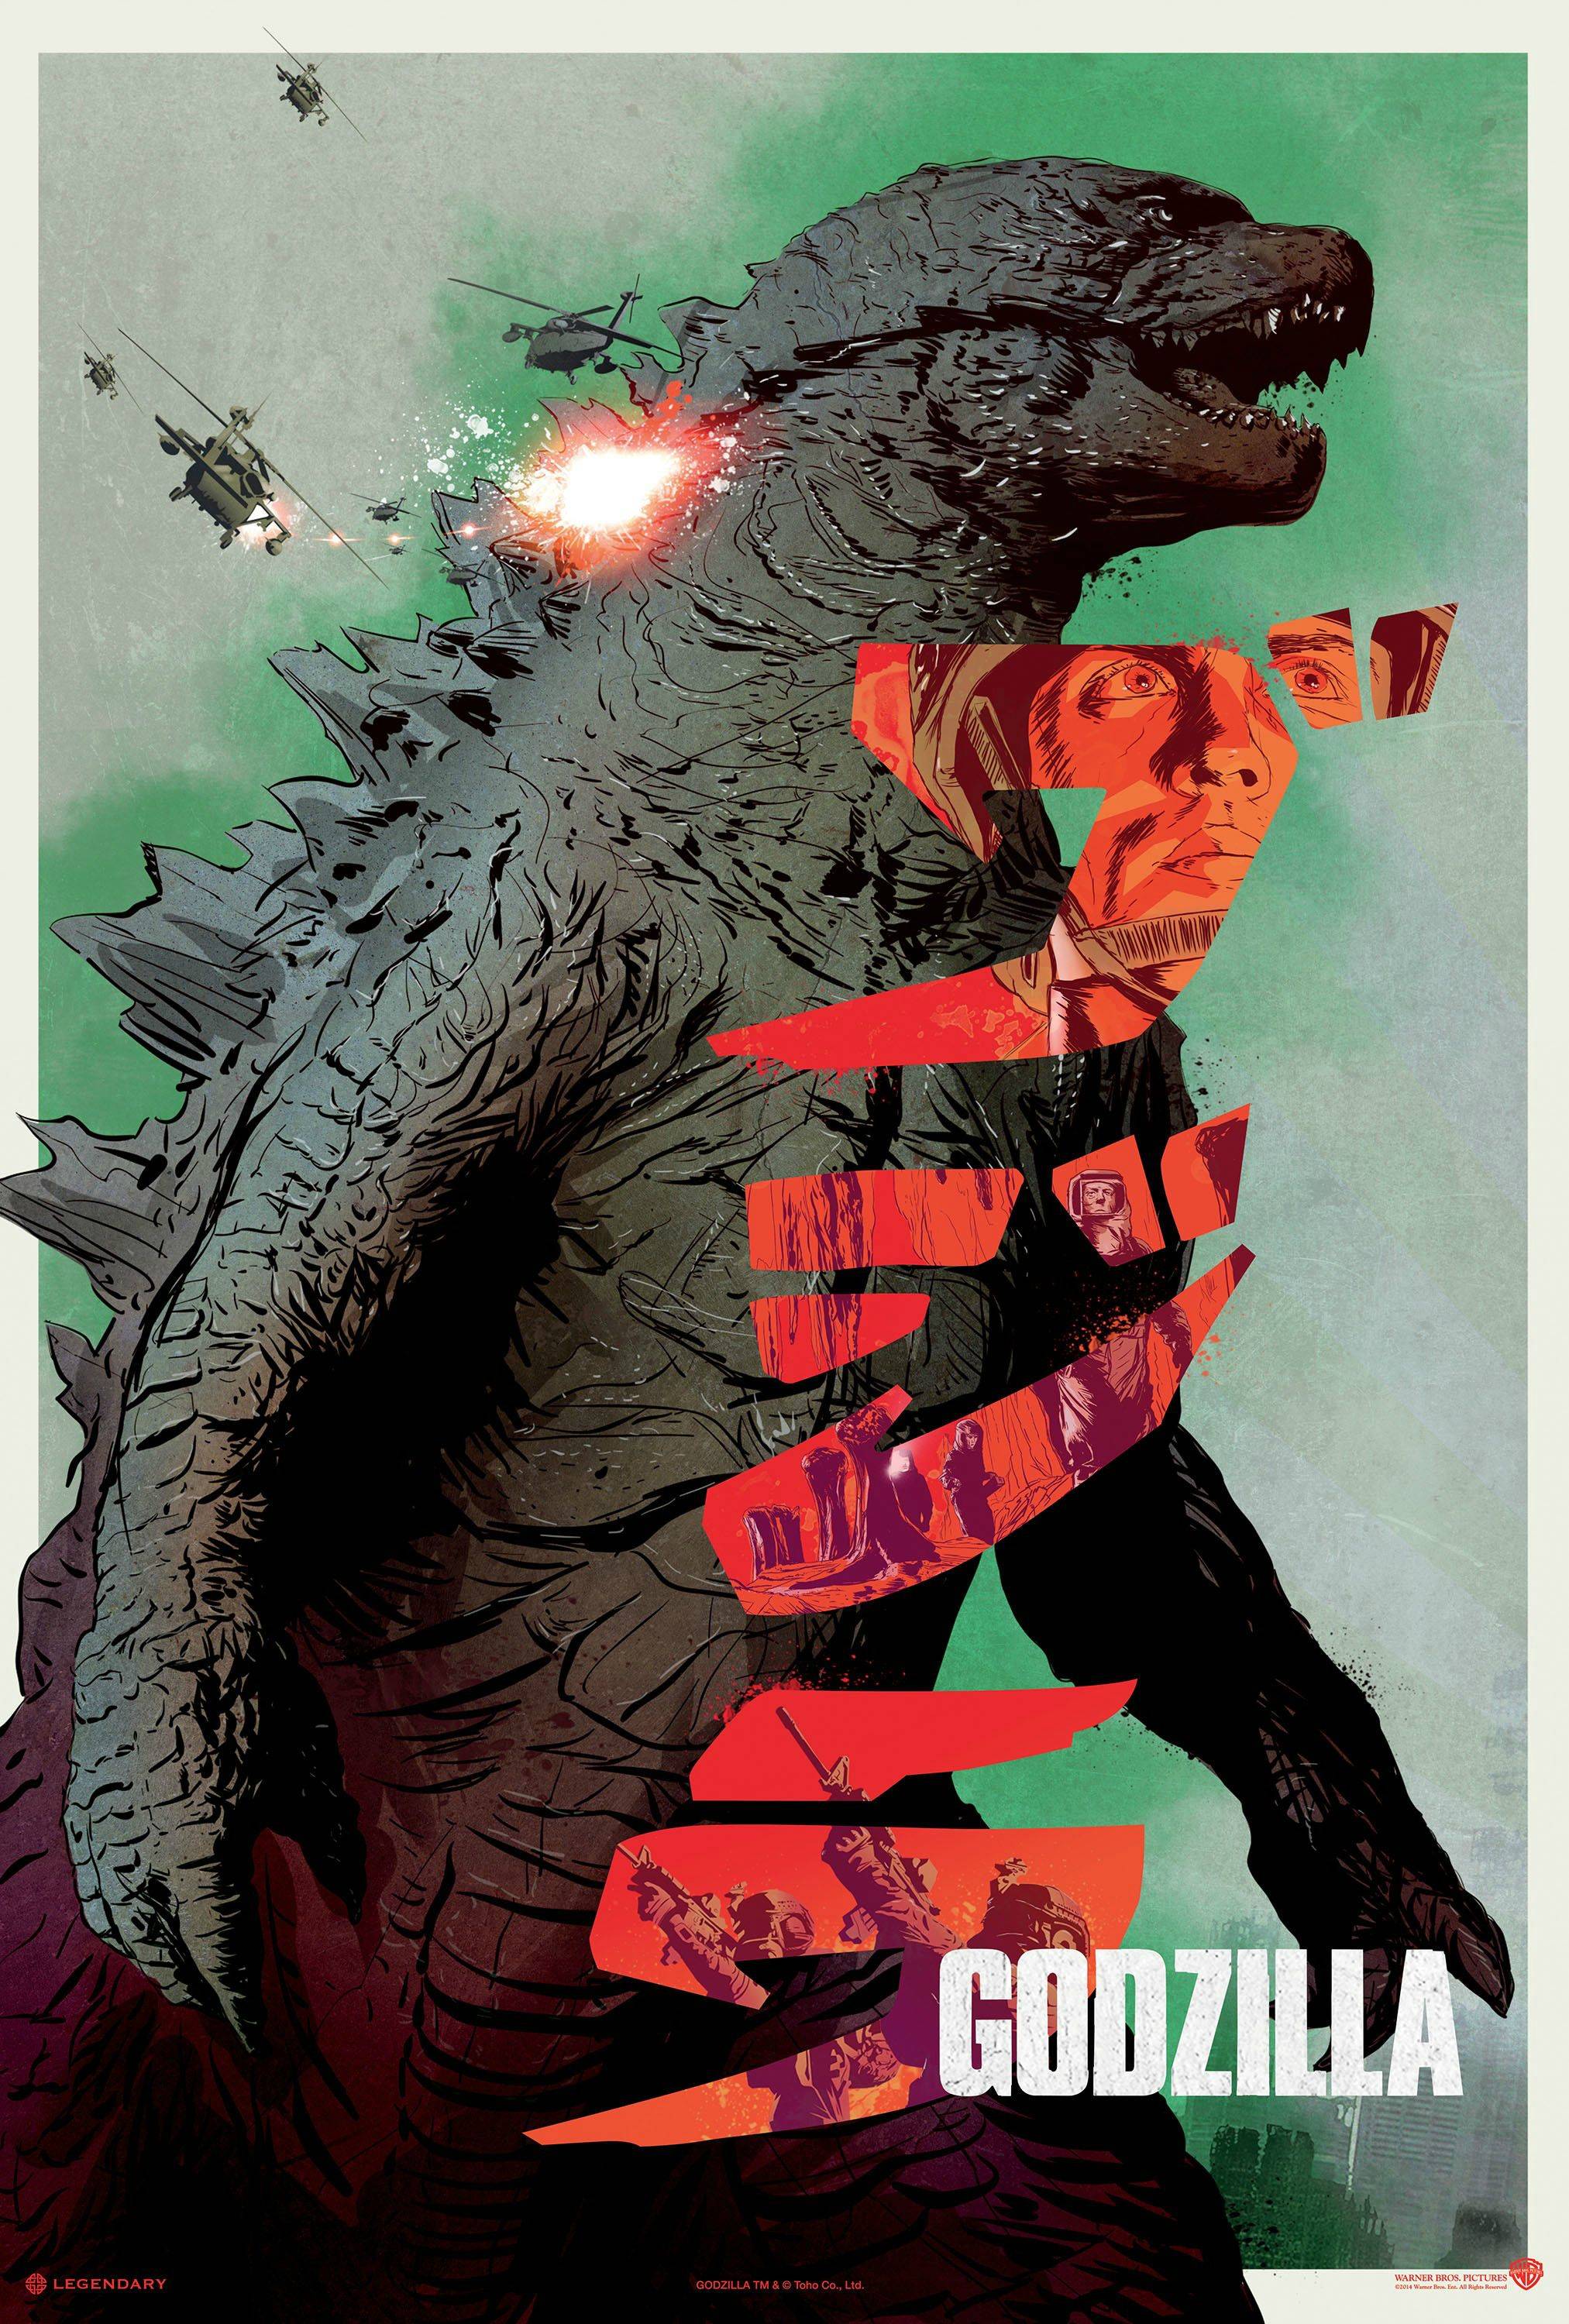 Whoa Godzilla 2014 HighQualityGifs